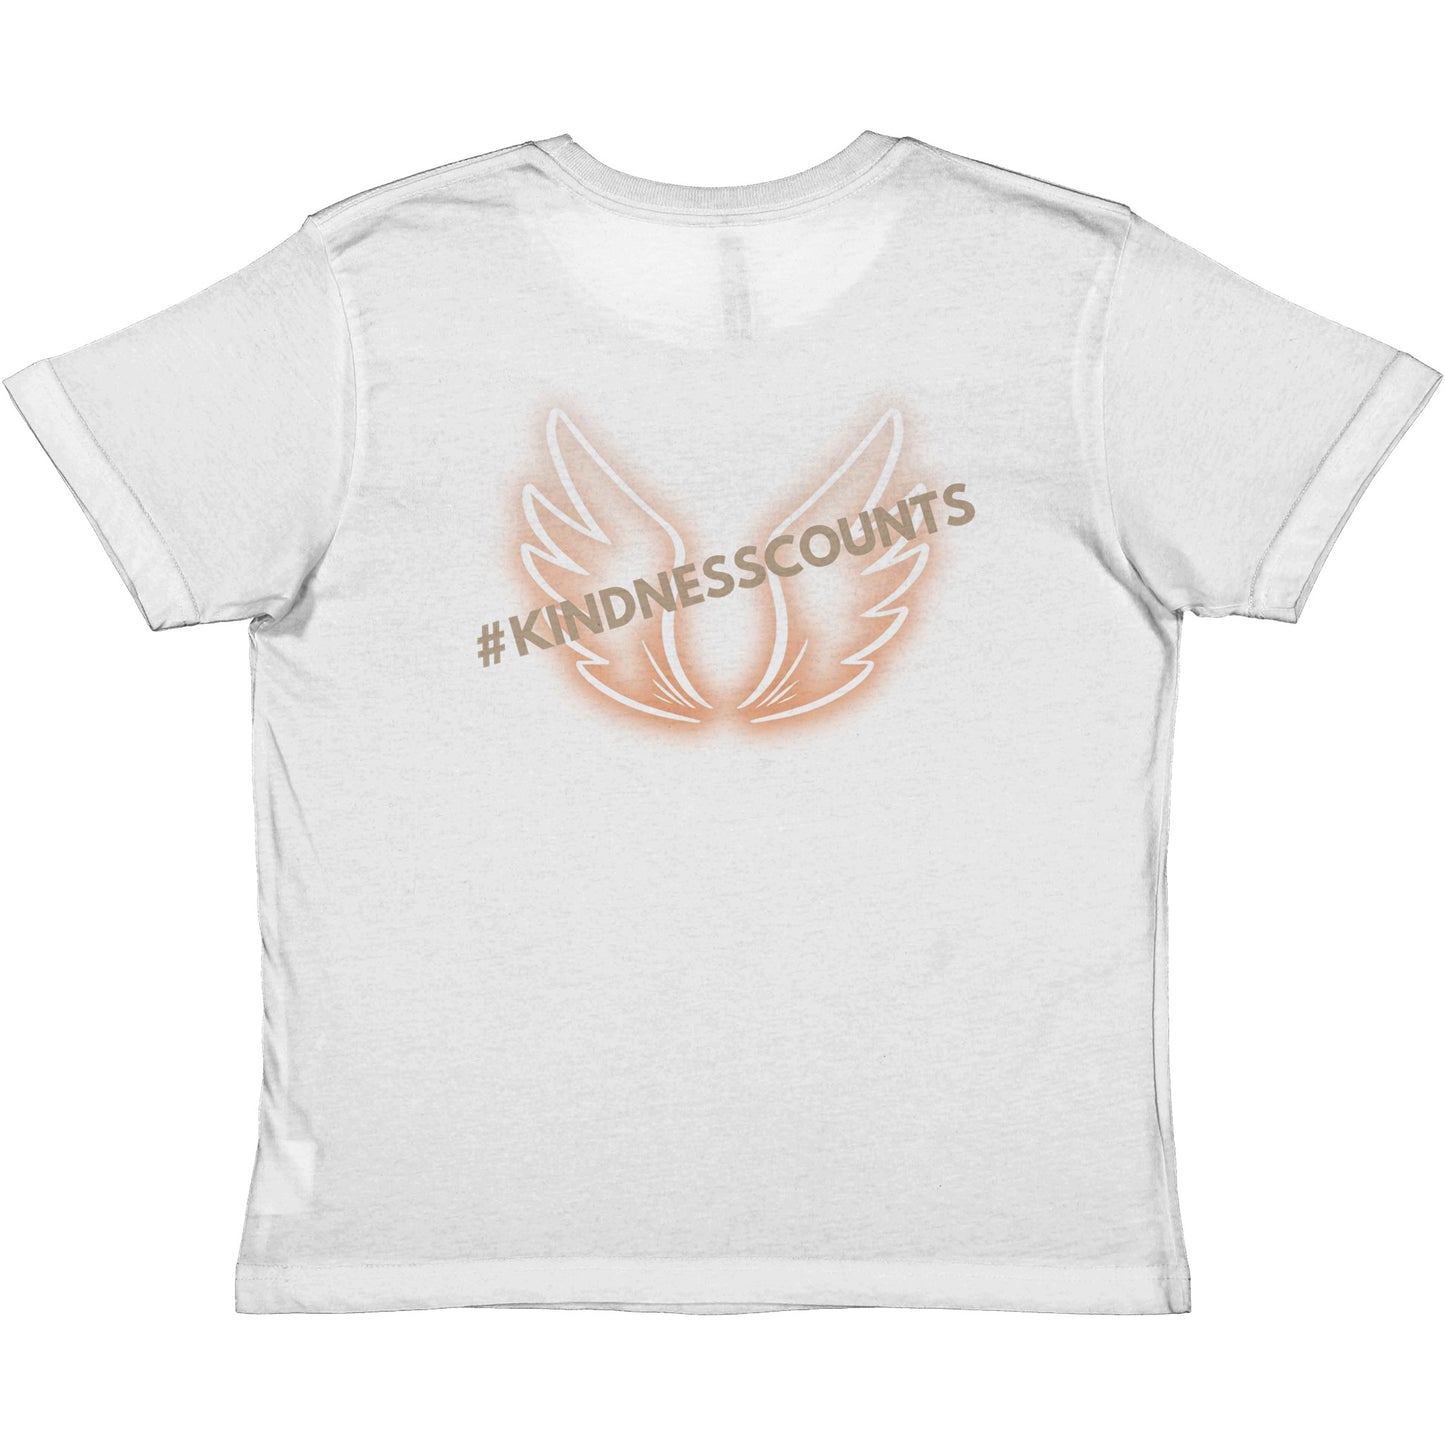 Angel Wings Premium Kids Crewneck T-shirt